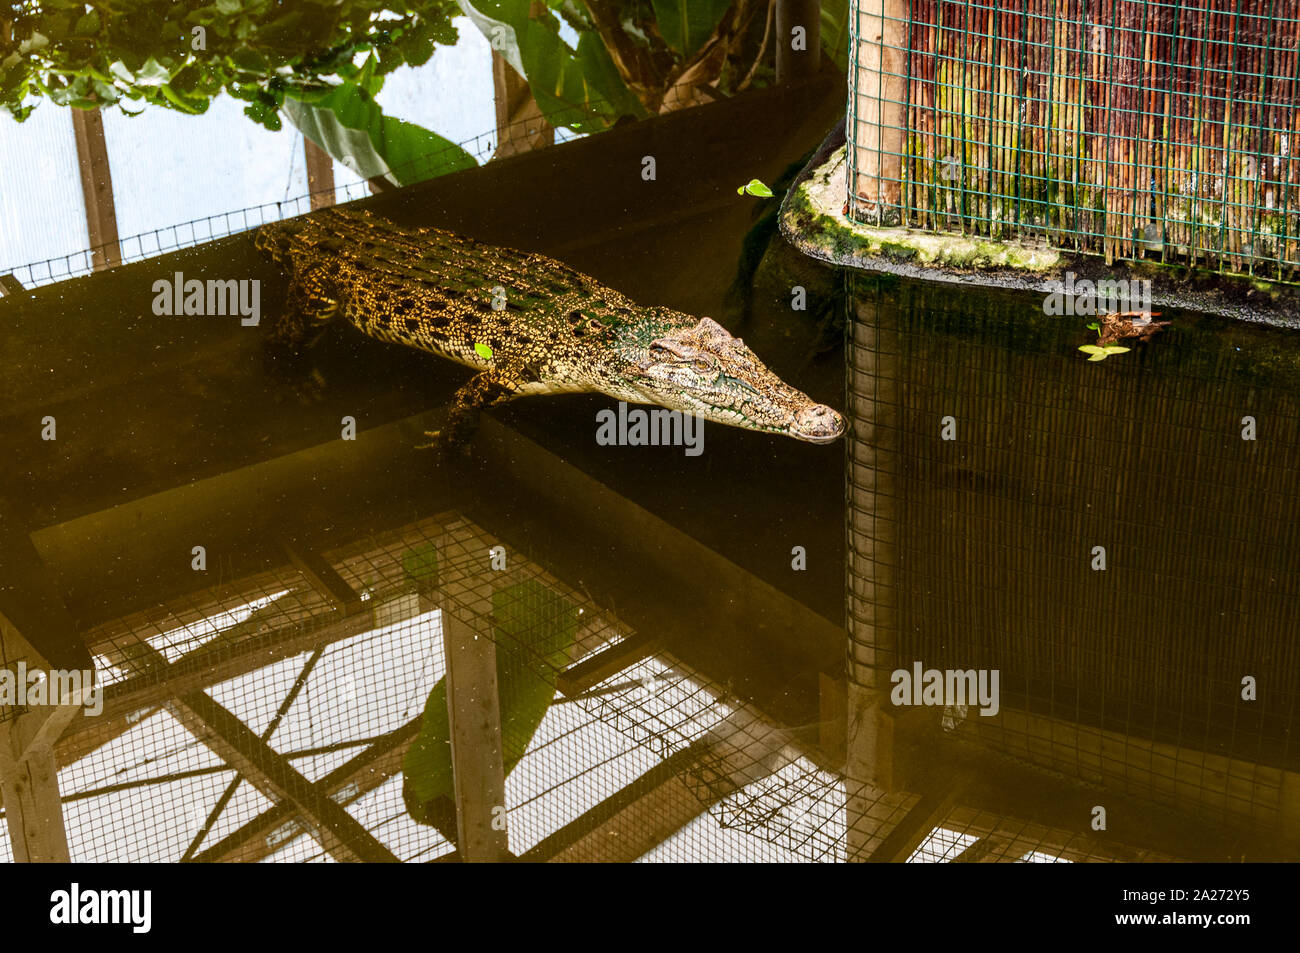 Un arancio-marrone coccodrillo con motivi geometrici regolari contrassegni neri nuota da sotto una schermata con la sua testa e muso appena al di sopra del livello dell'acqua Foto Stock